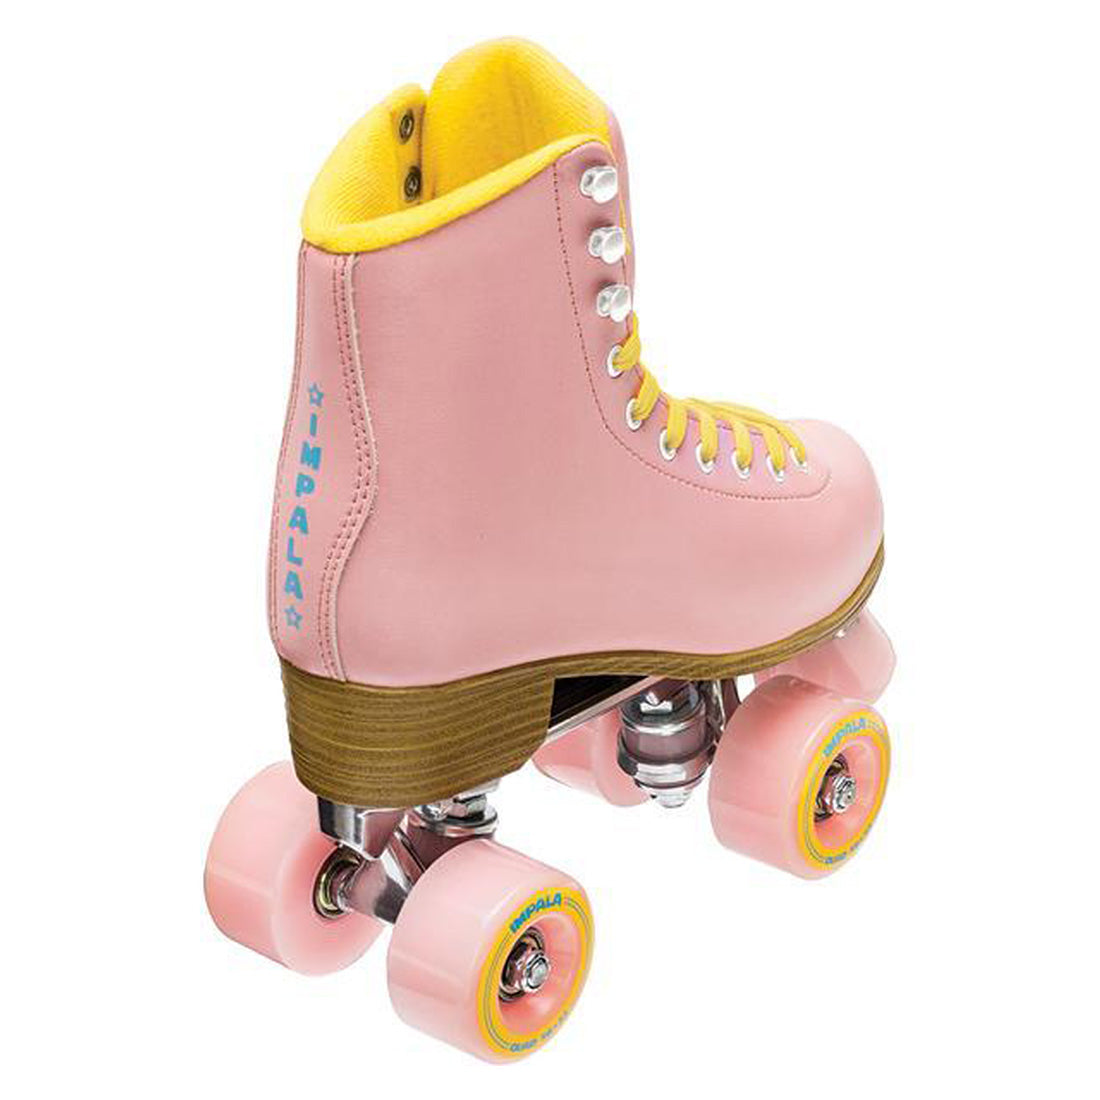 Impala Sidewalk - Pink/Yellow Roller Skates